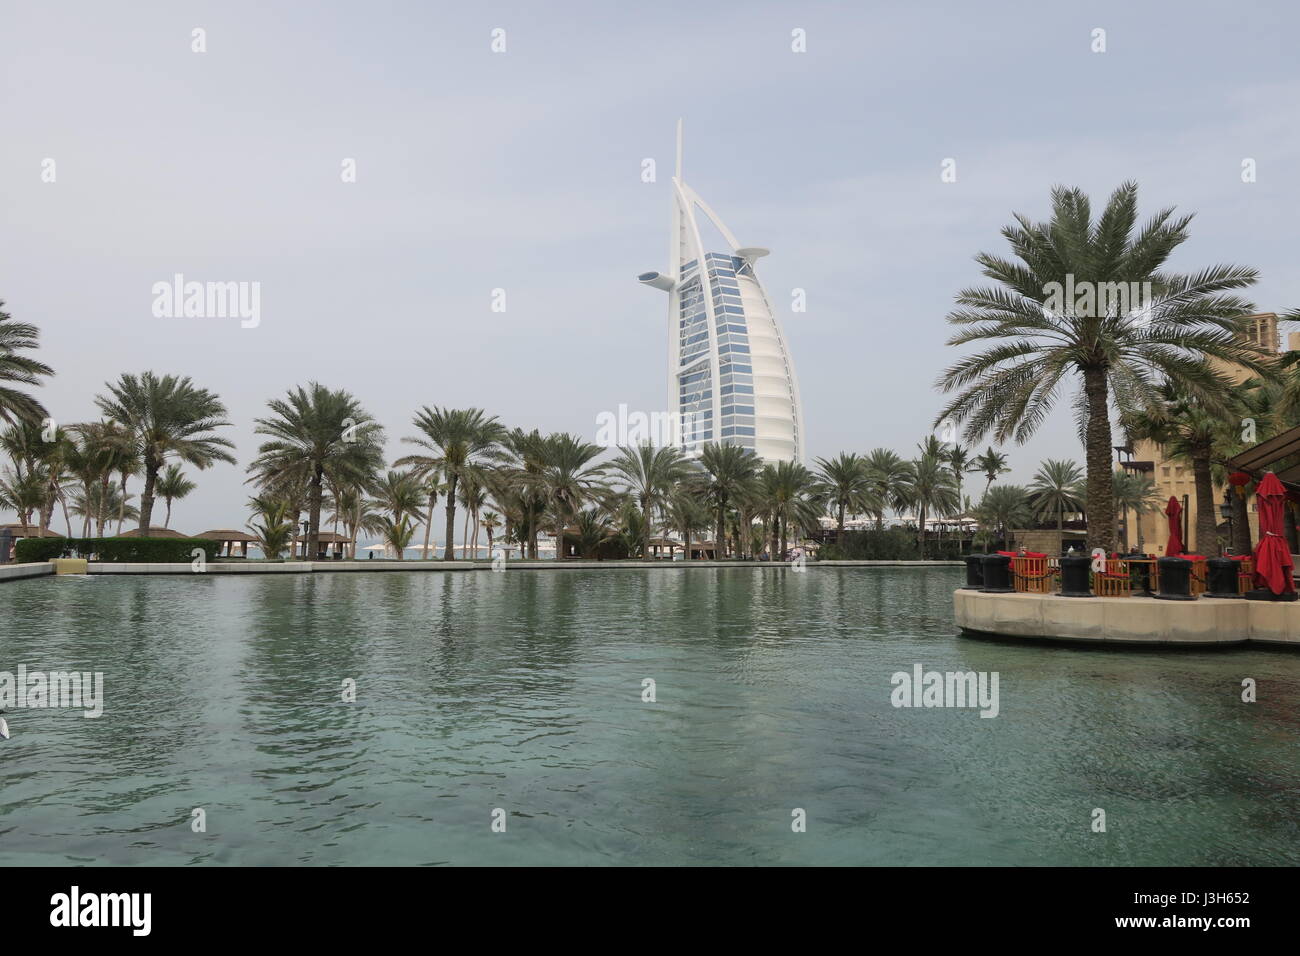 Berühmten Hotel Burj Al Arab, auf einer Insel des zurückgeforderten Landes befindet, wurde 1999 eröffnet. Es ist der weltweit höchste Hotel. Stockfoto